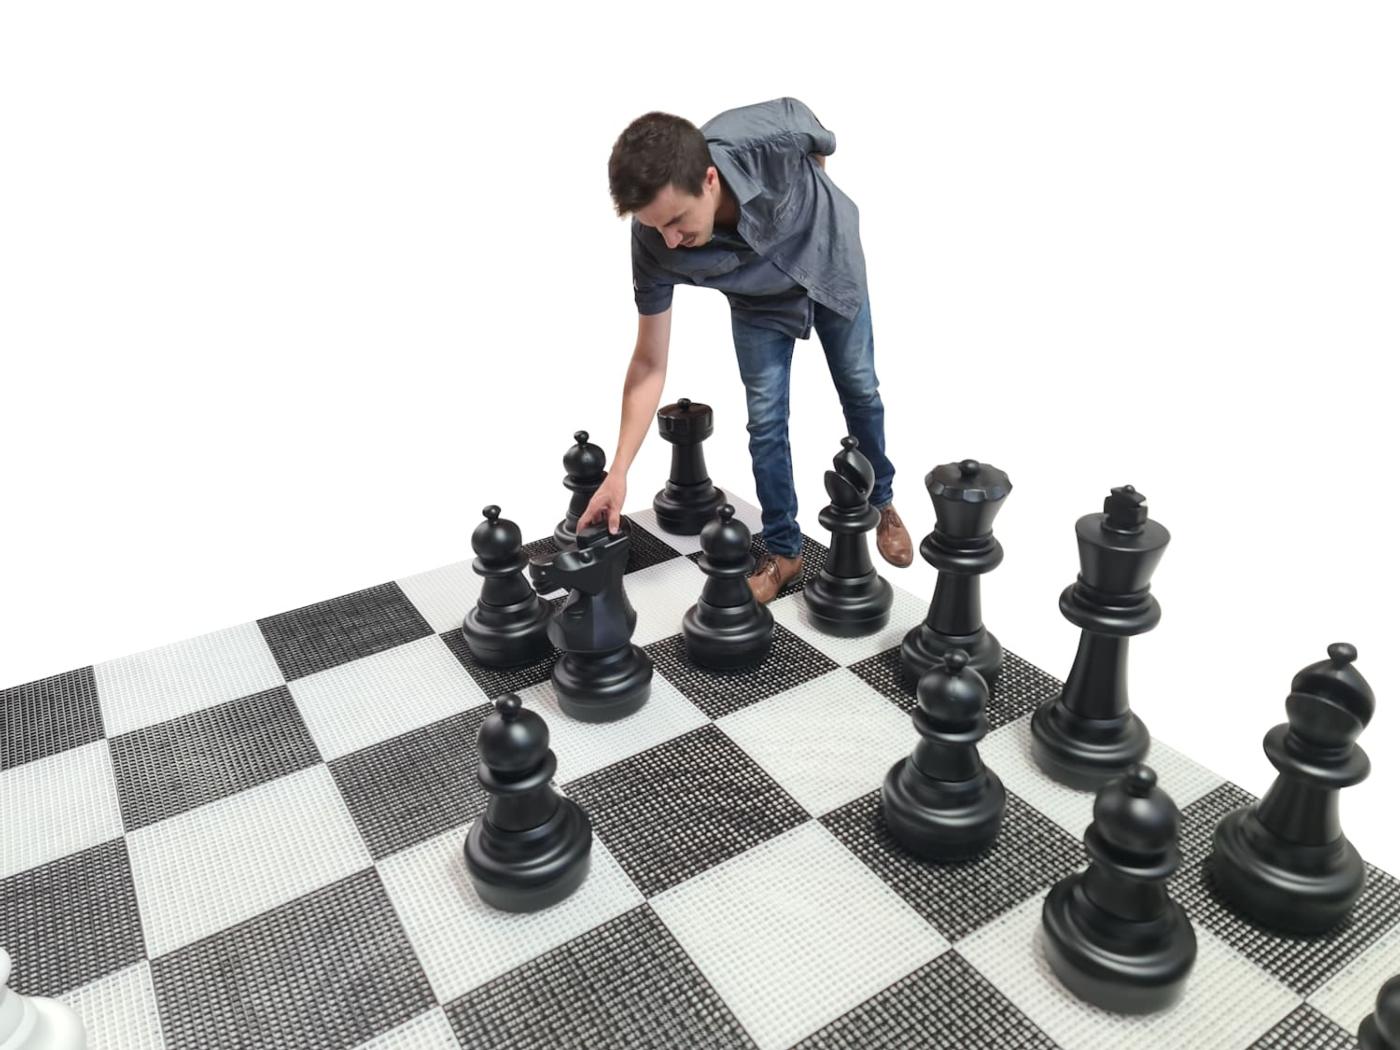 Joc d'escacs gegant amb tauler rígid gegant inclòs joc complet sobre tauler amb jugador